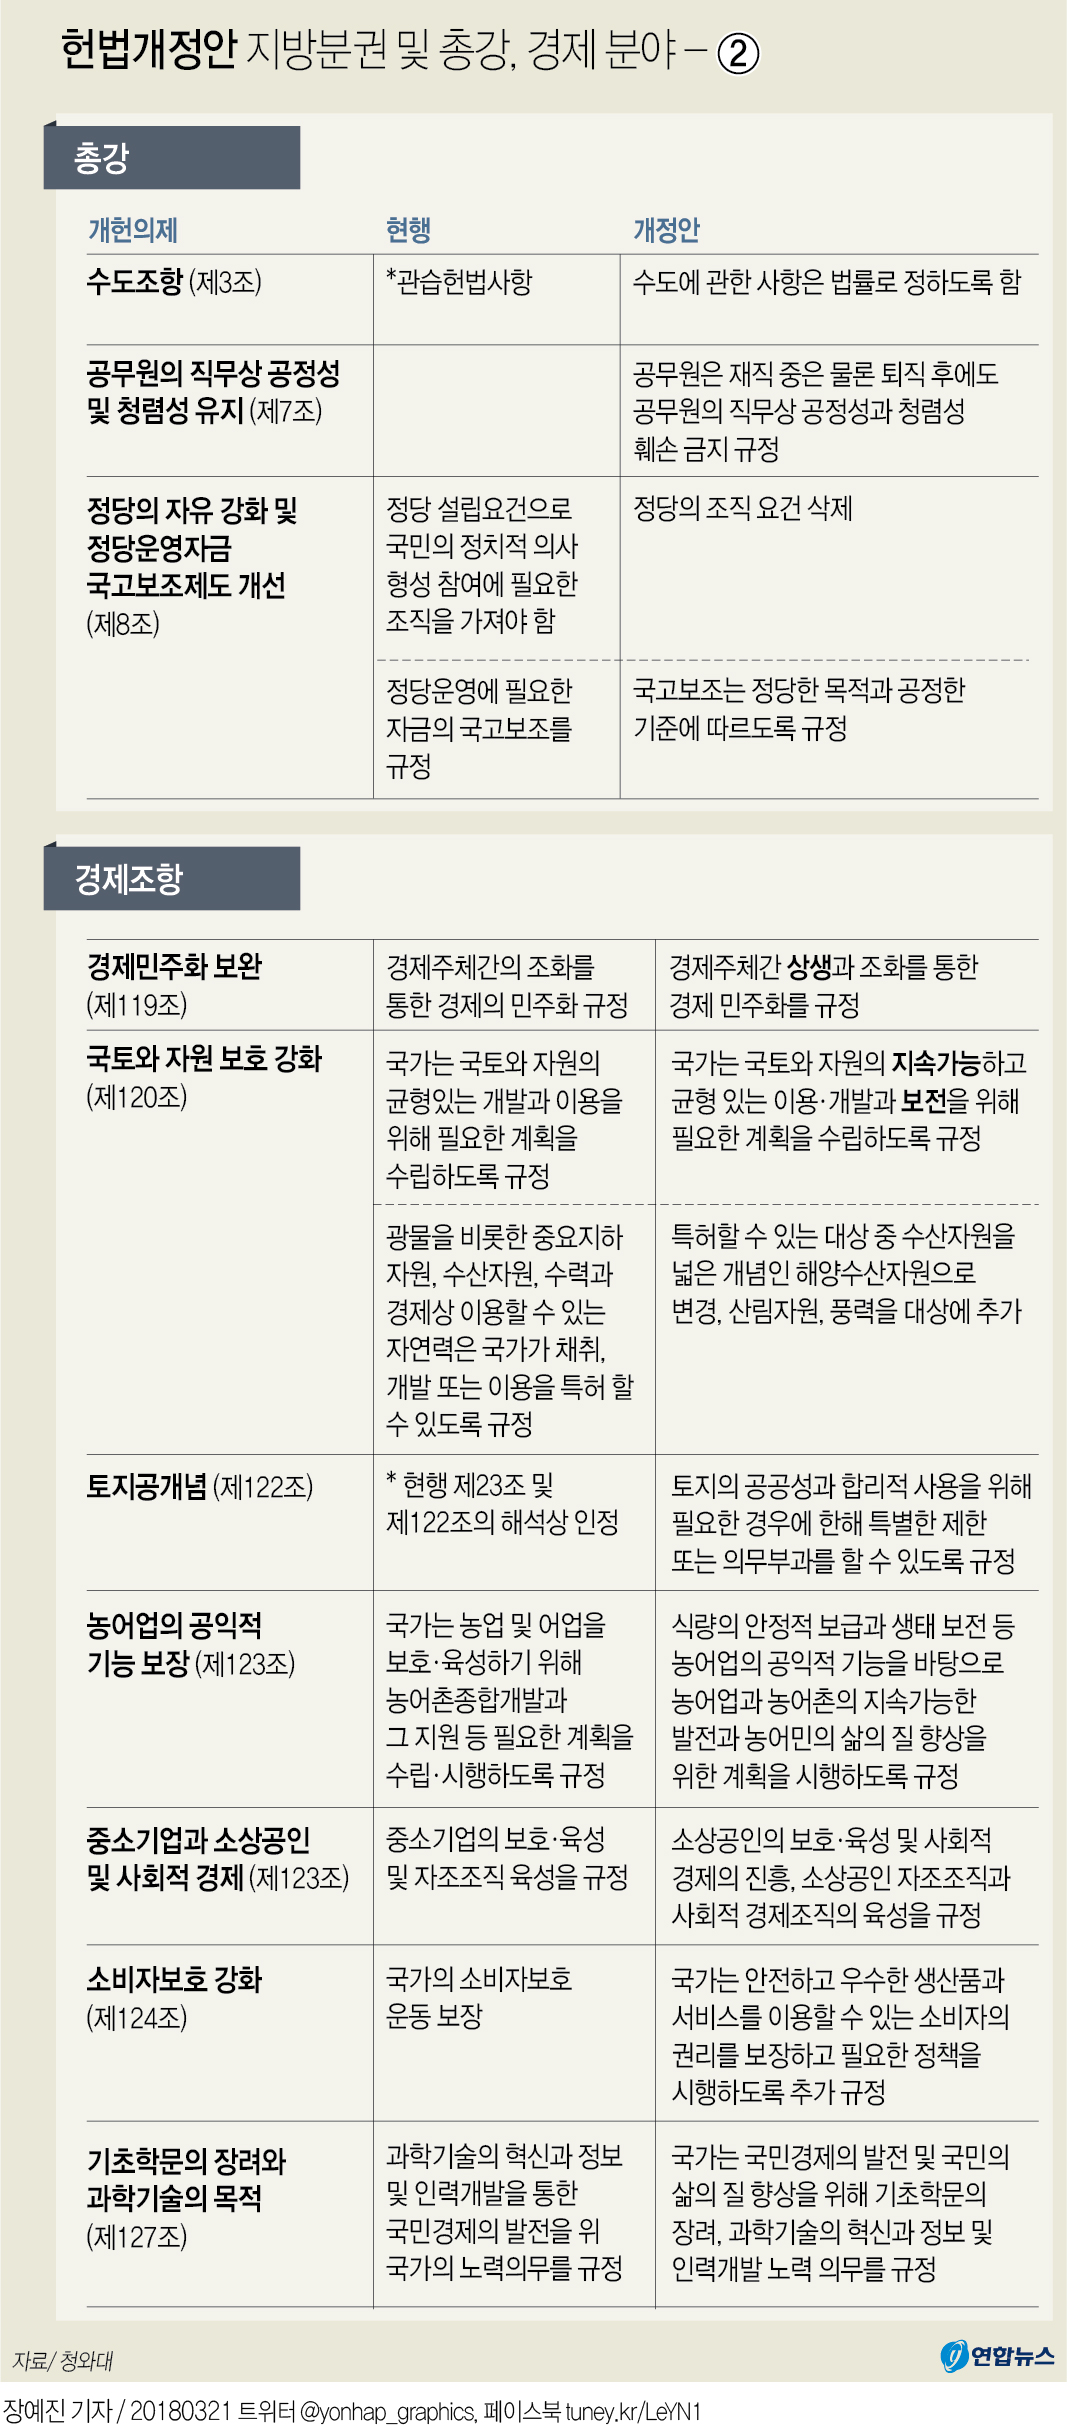 [그래픽] 헌법개정안 지방분권 및 총강, 경제분야 주요 내용 - ②